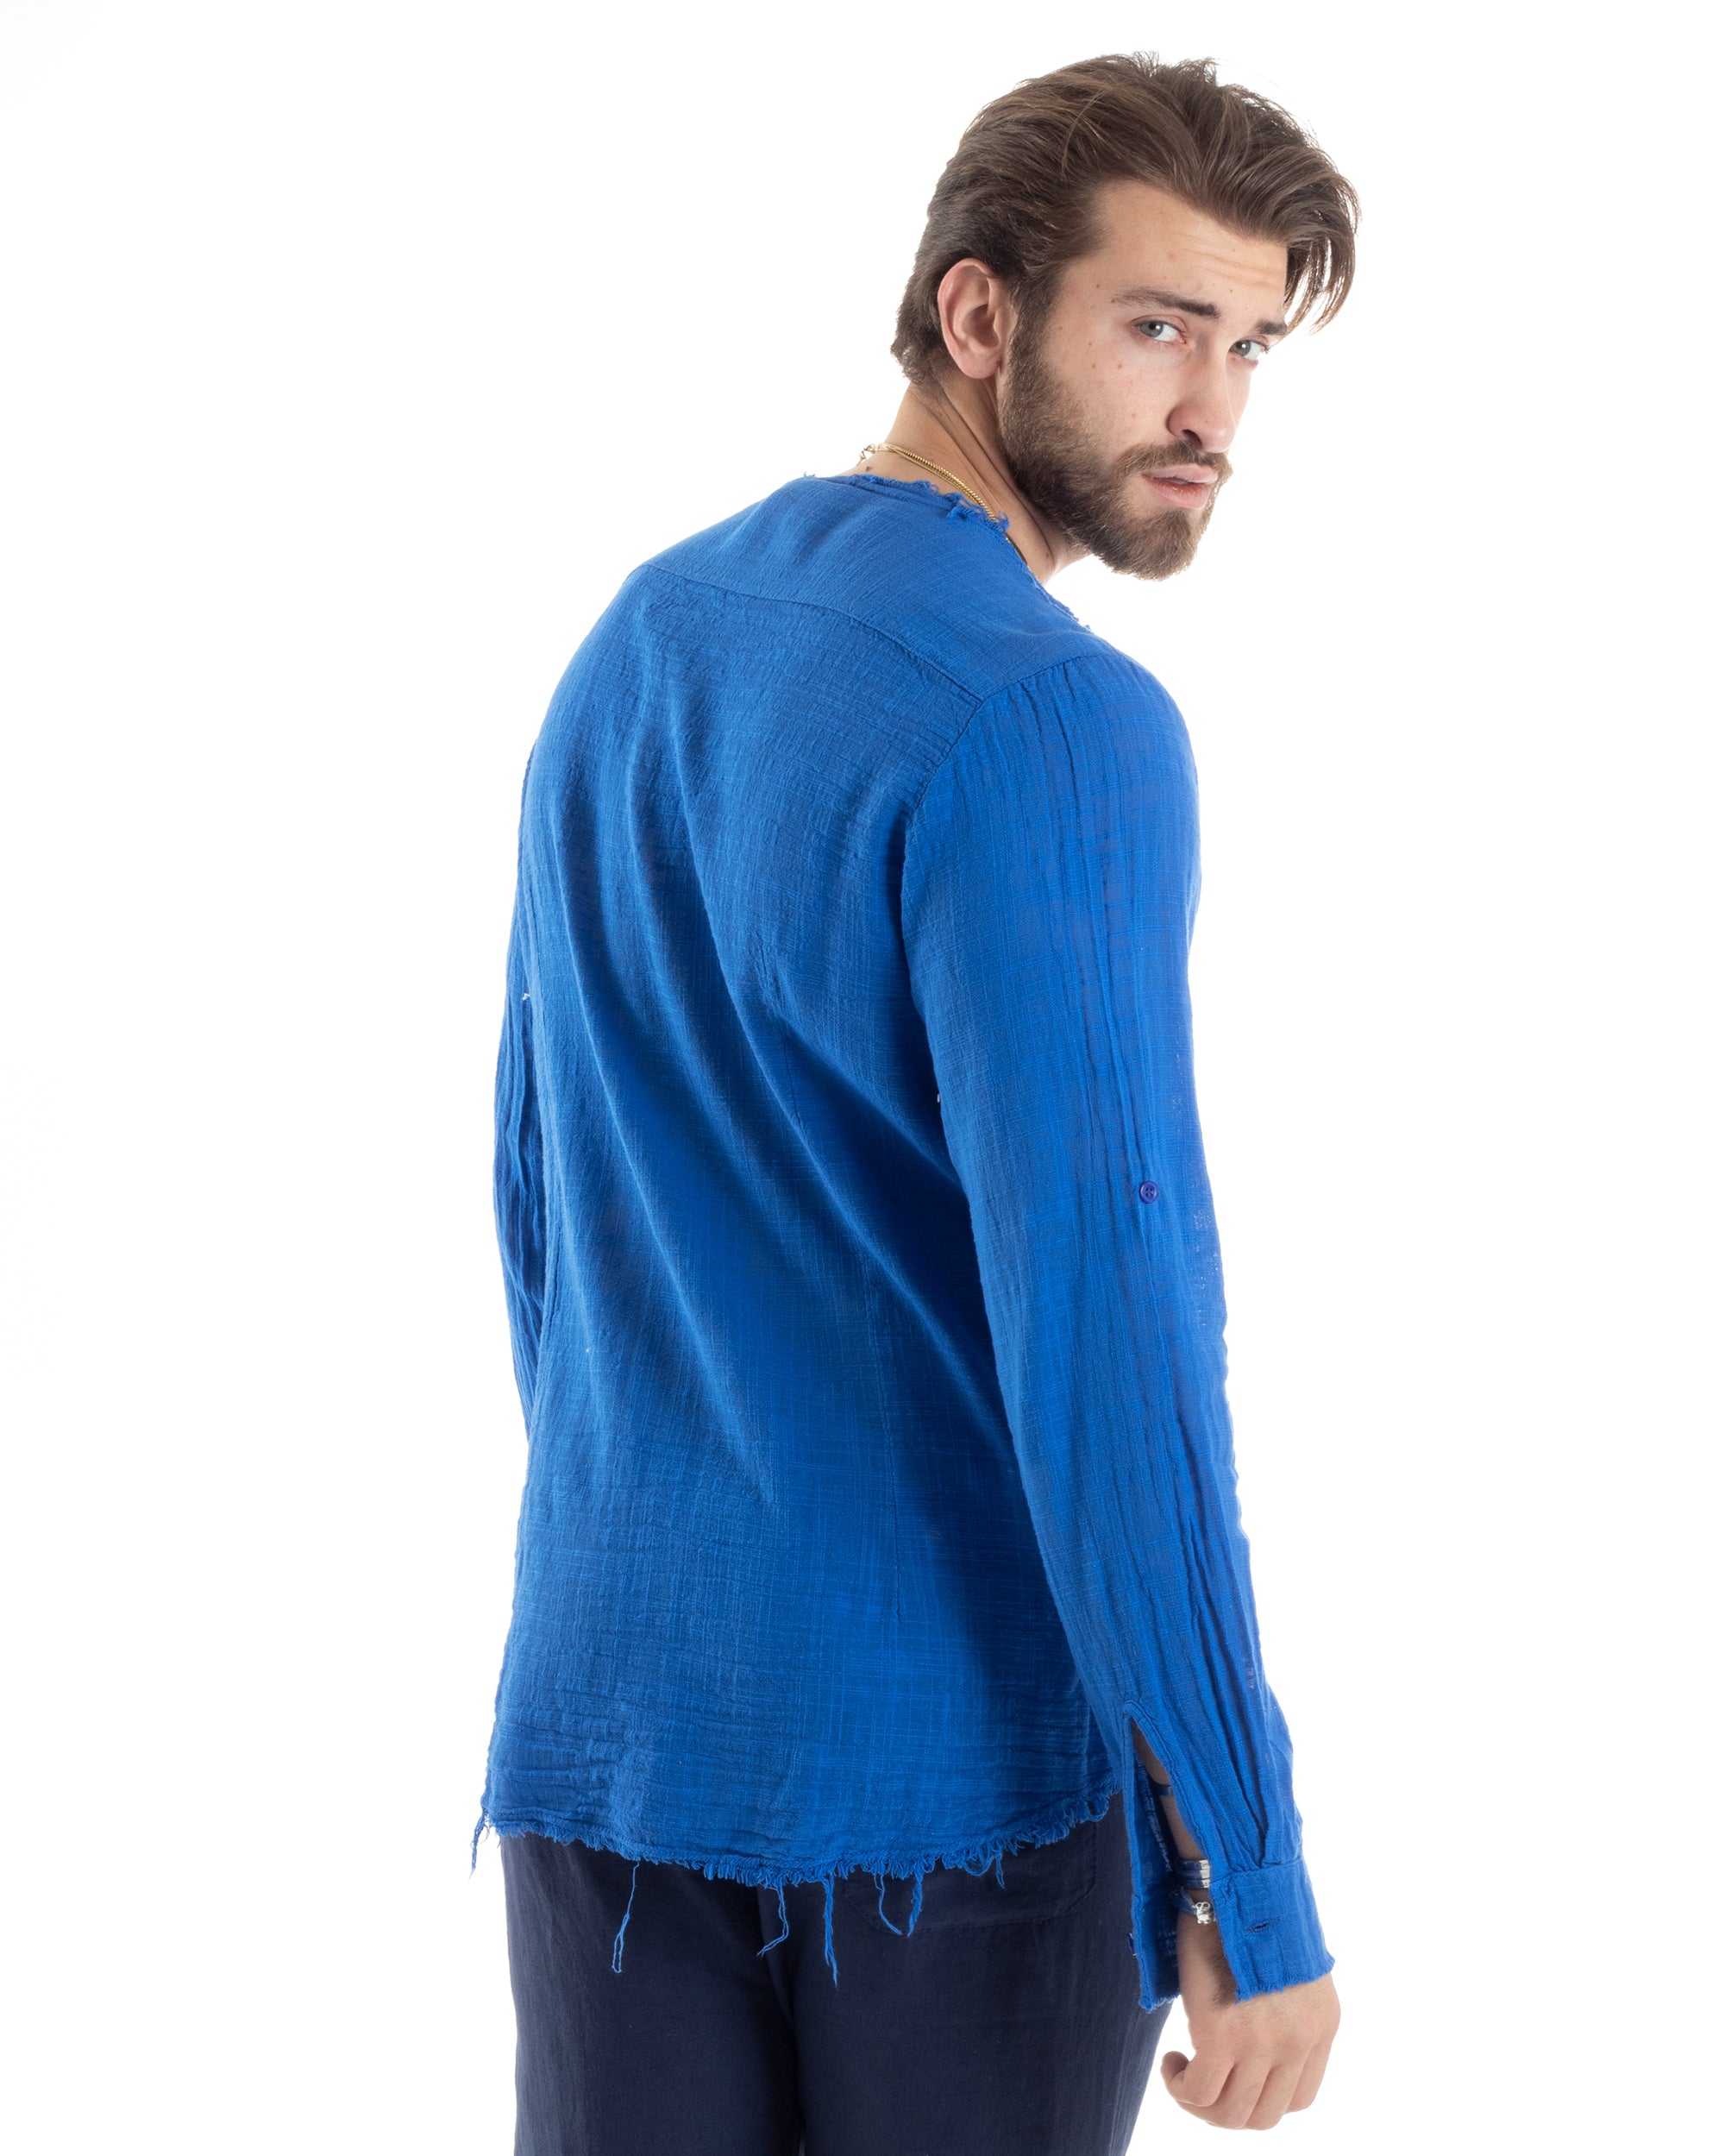 Camicia Uomo Sfrangiata Cotone Lino Manica Lunga Tinta Unita Blu Royal GIOSAL-C2842A